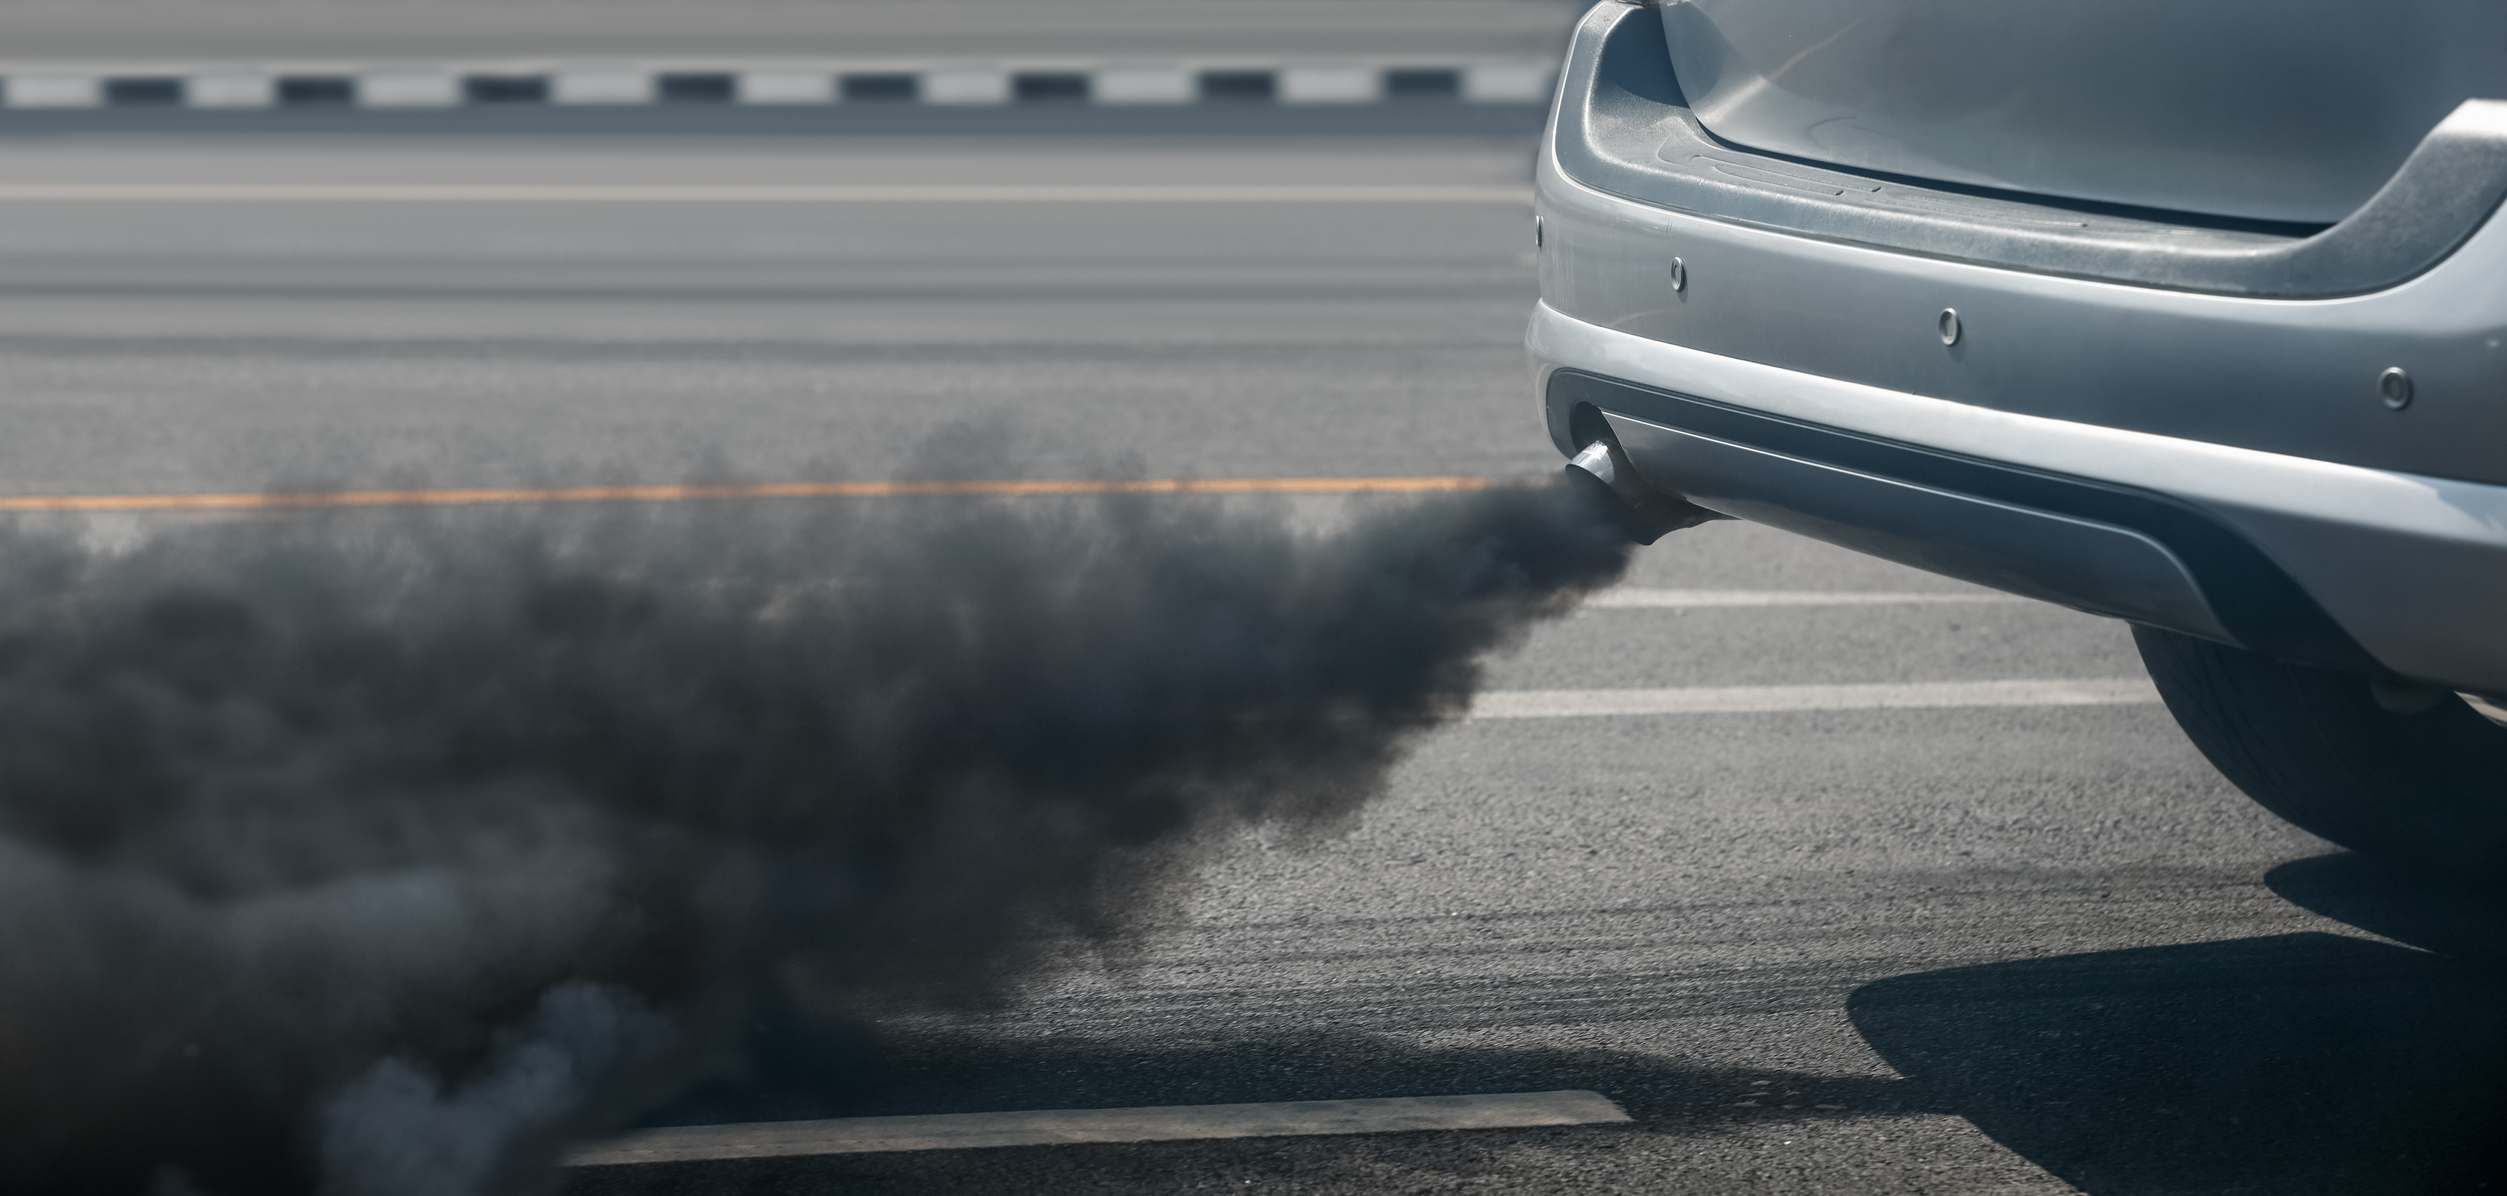 Voiture à motorisation diesel : quelles sont les raisons d'un dégagement de fumée noire